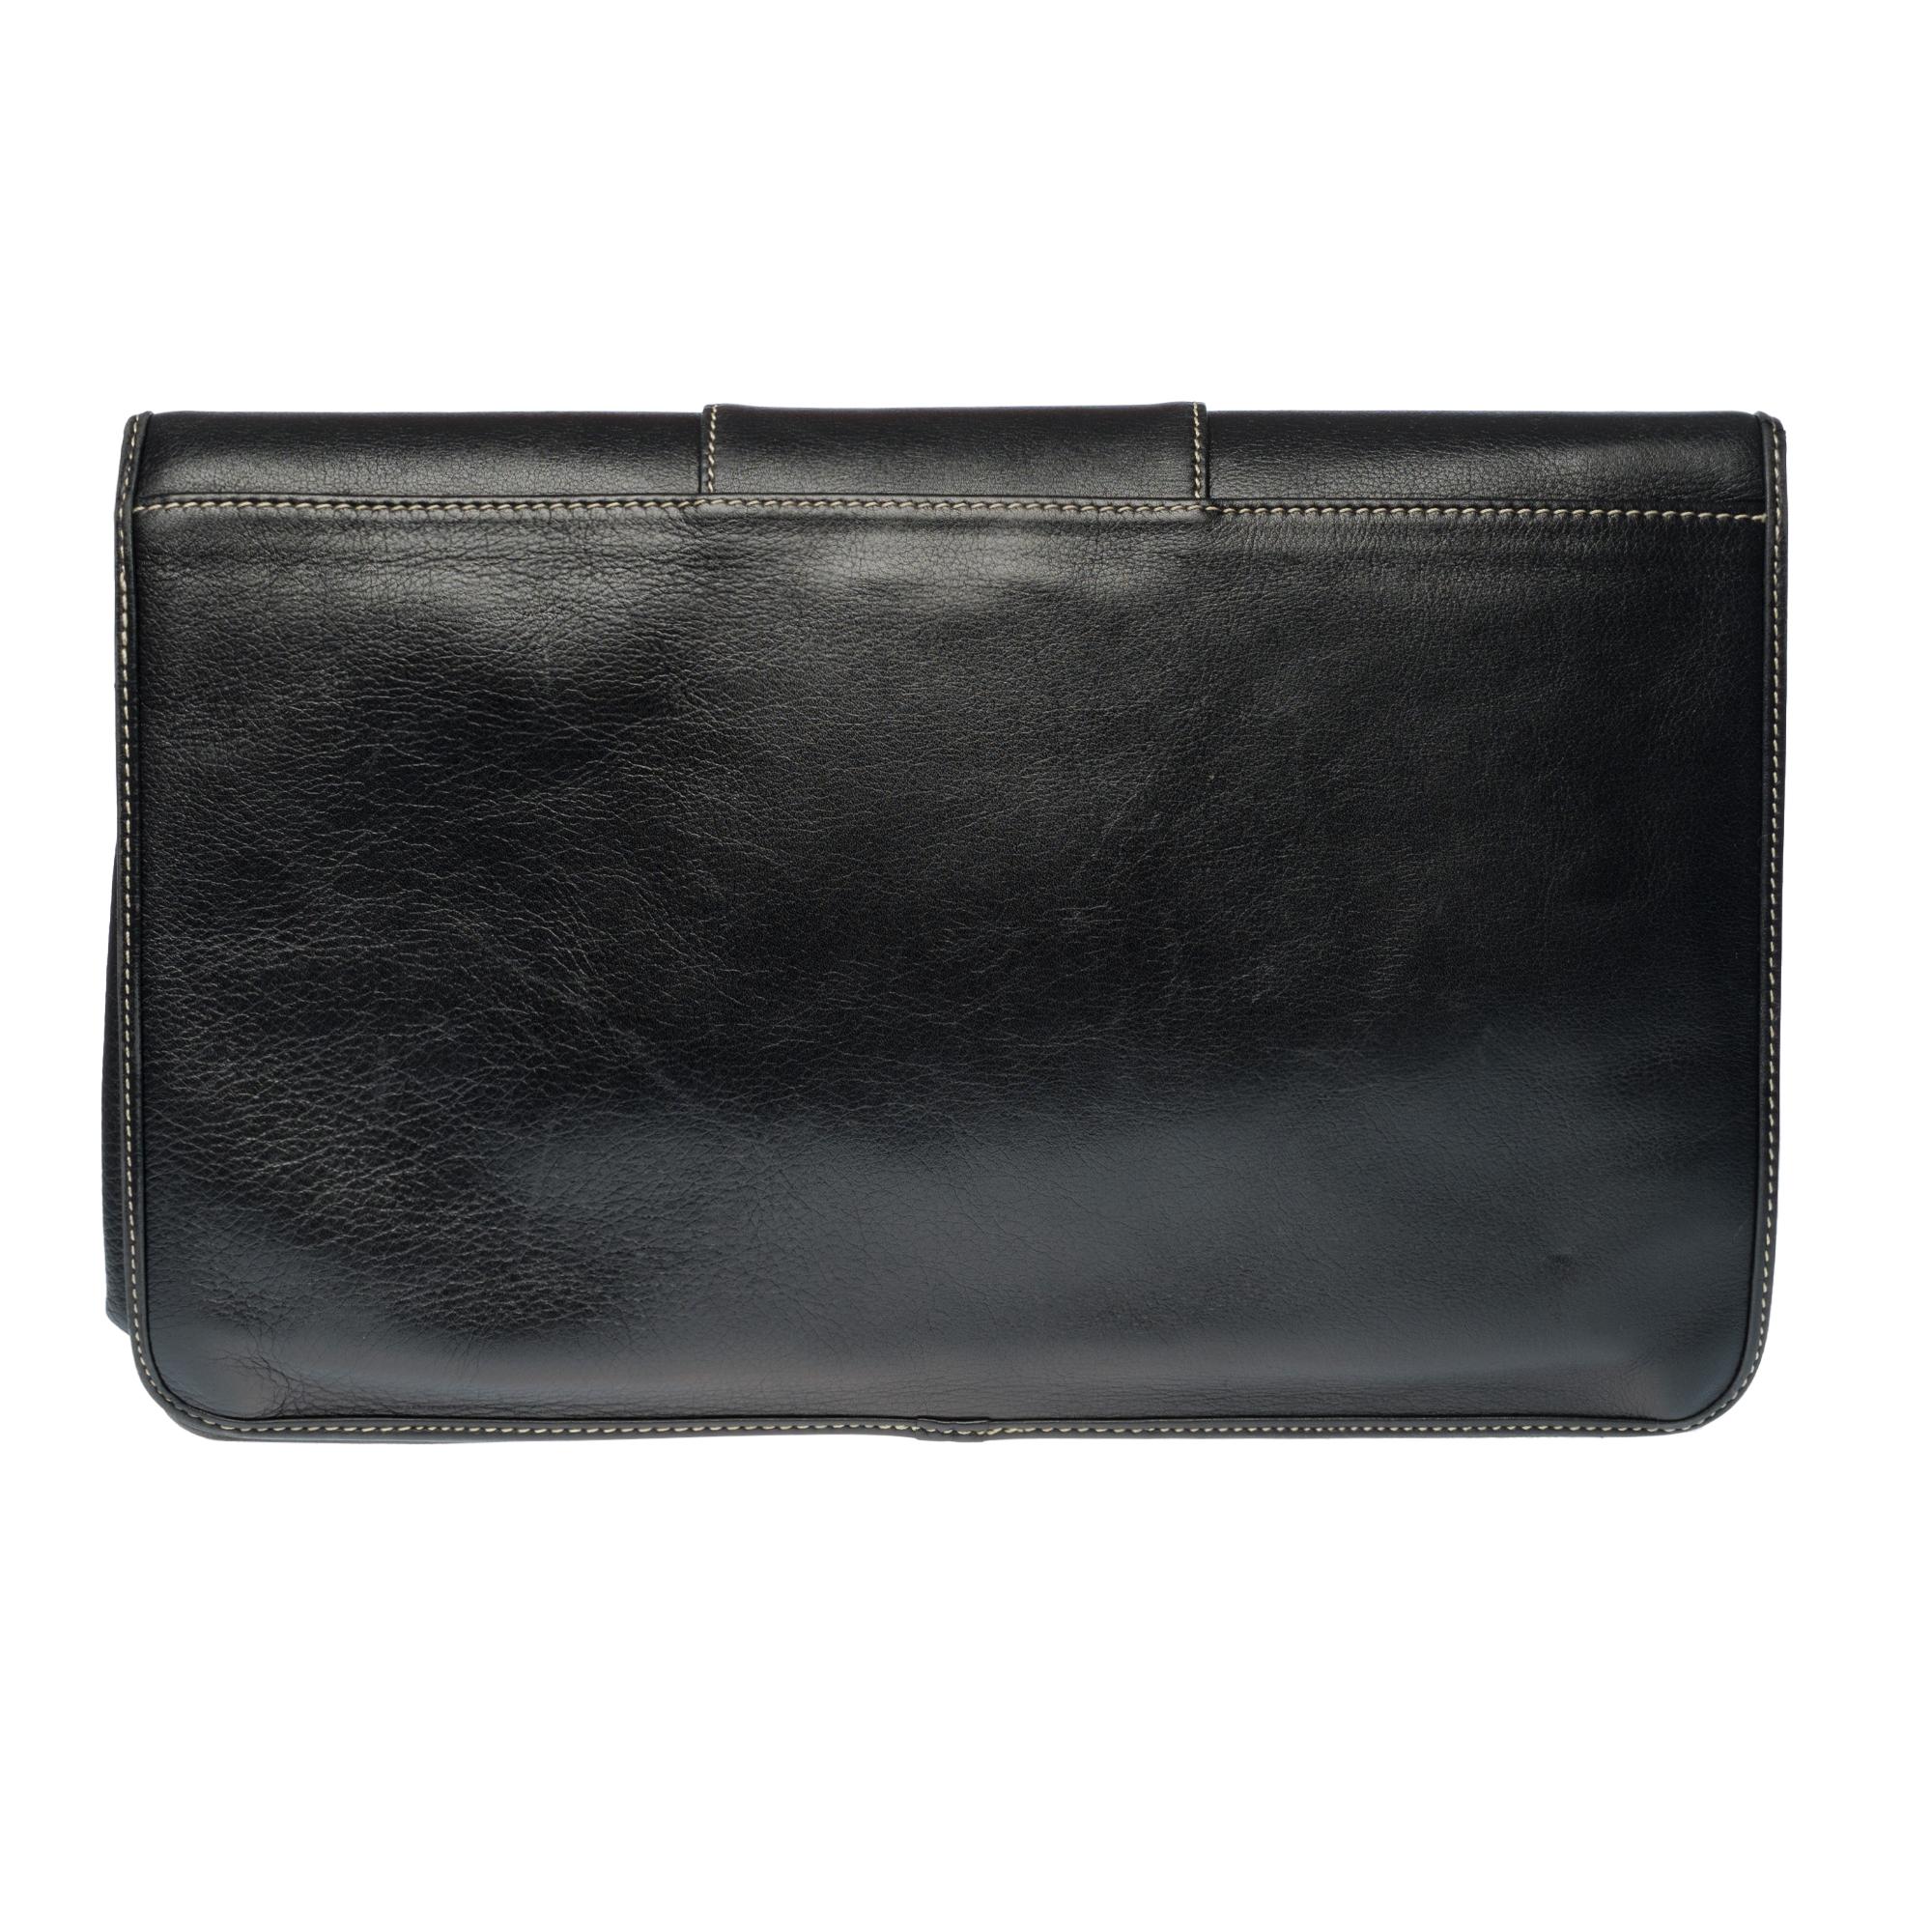 Magnifique pochette Christian Dior en cuir noir, surpiqûres blanches, quincaillerie en métal argenté.
Rabat avec logo CD et fermeture par bouton poussoir.
Intérieur en cuir noir, 1 poche zippée.
Signature : 